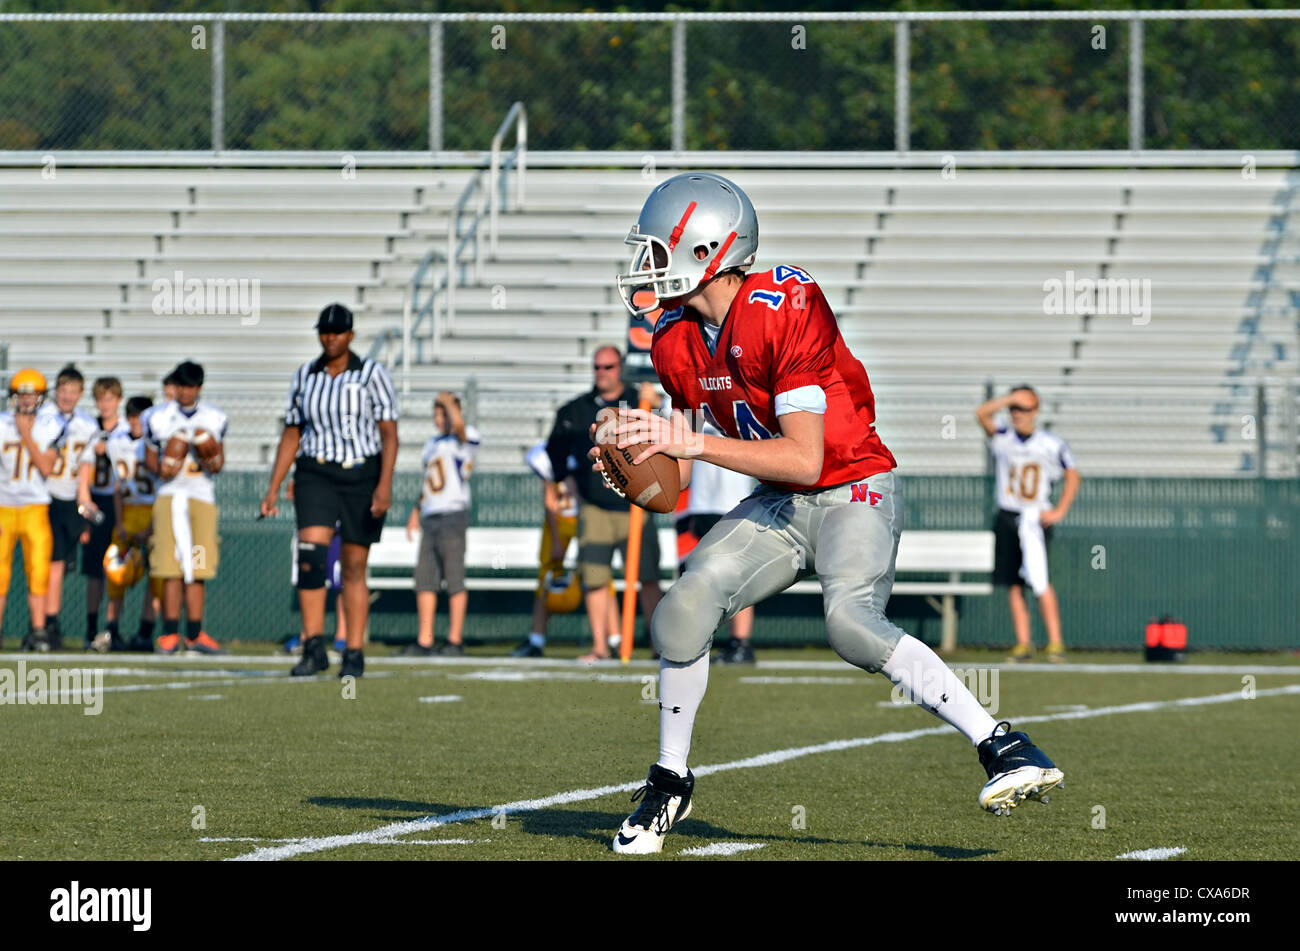 Un giovane quarterback pronto a lanciare la palla durante una partita di calcio, un arbitro seguendo da vicino l'azione. Foto Stock